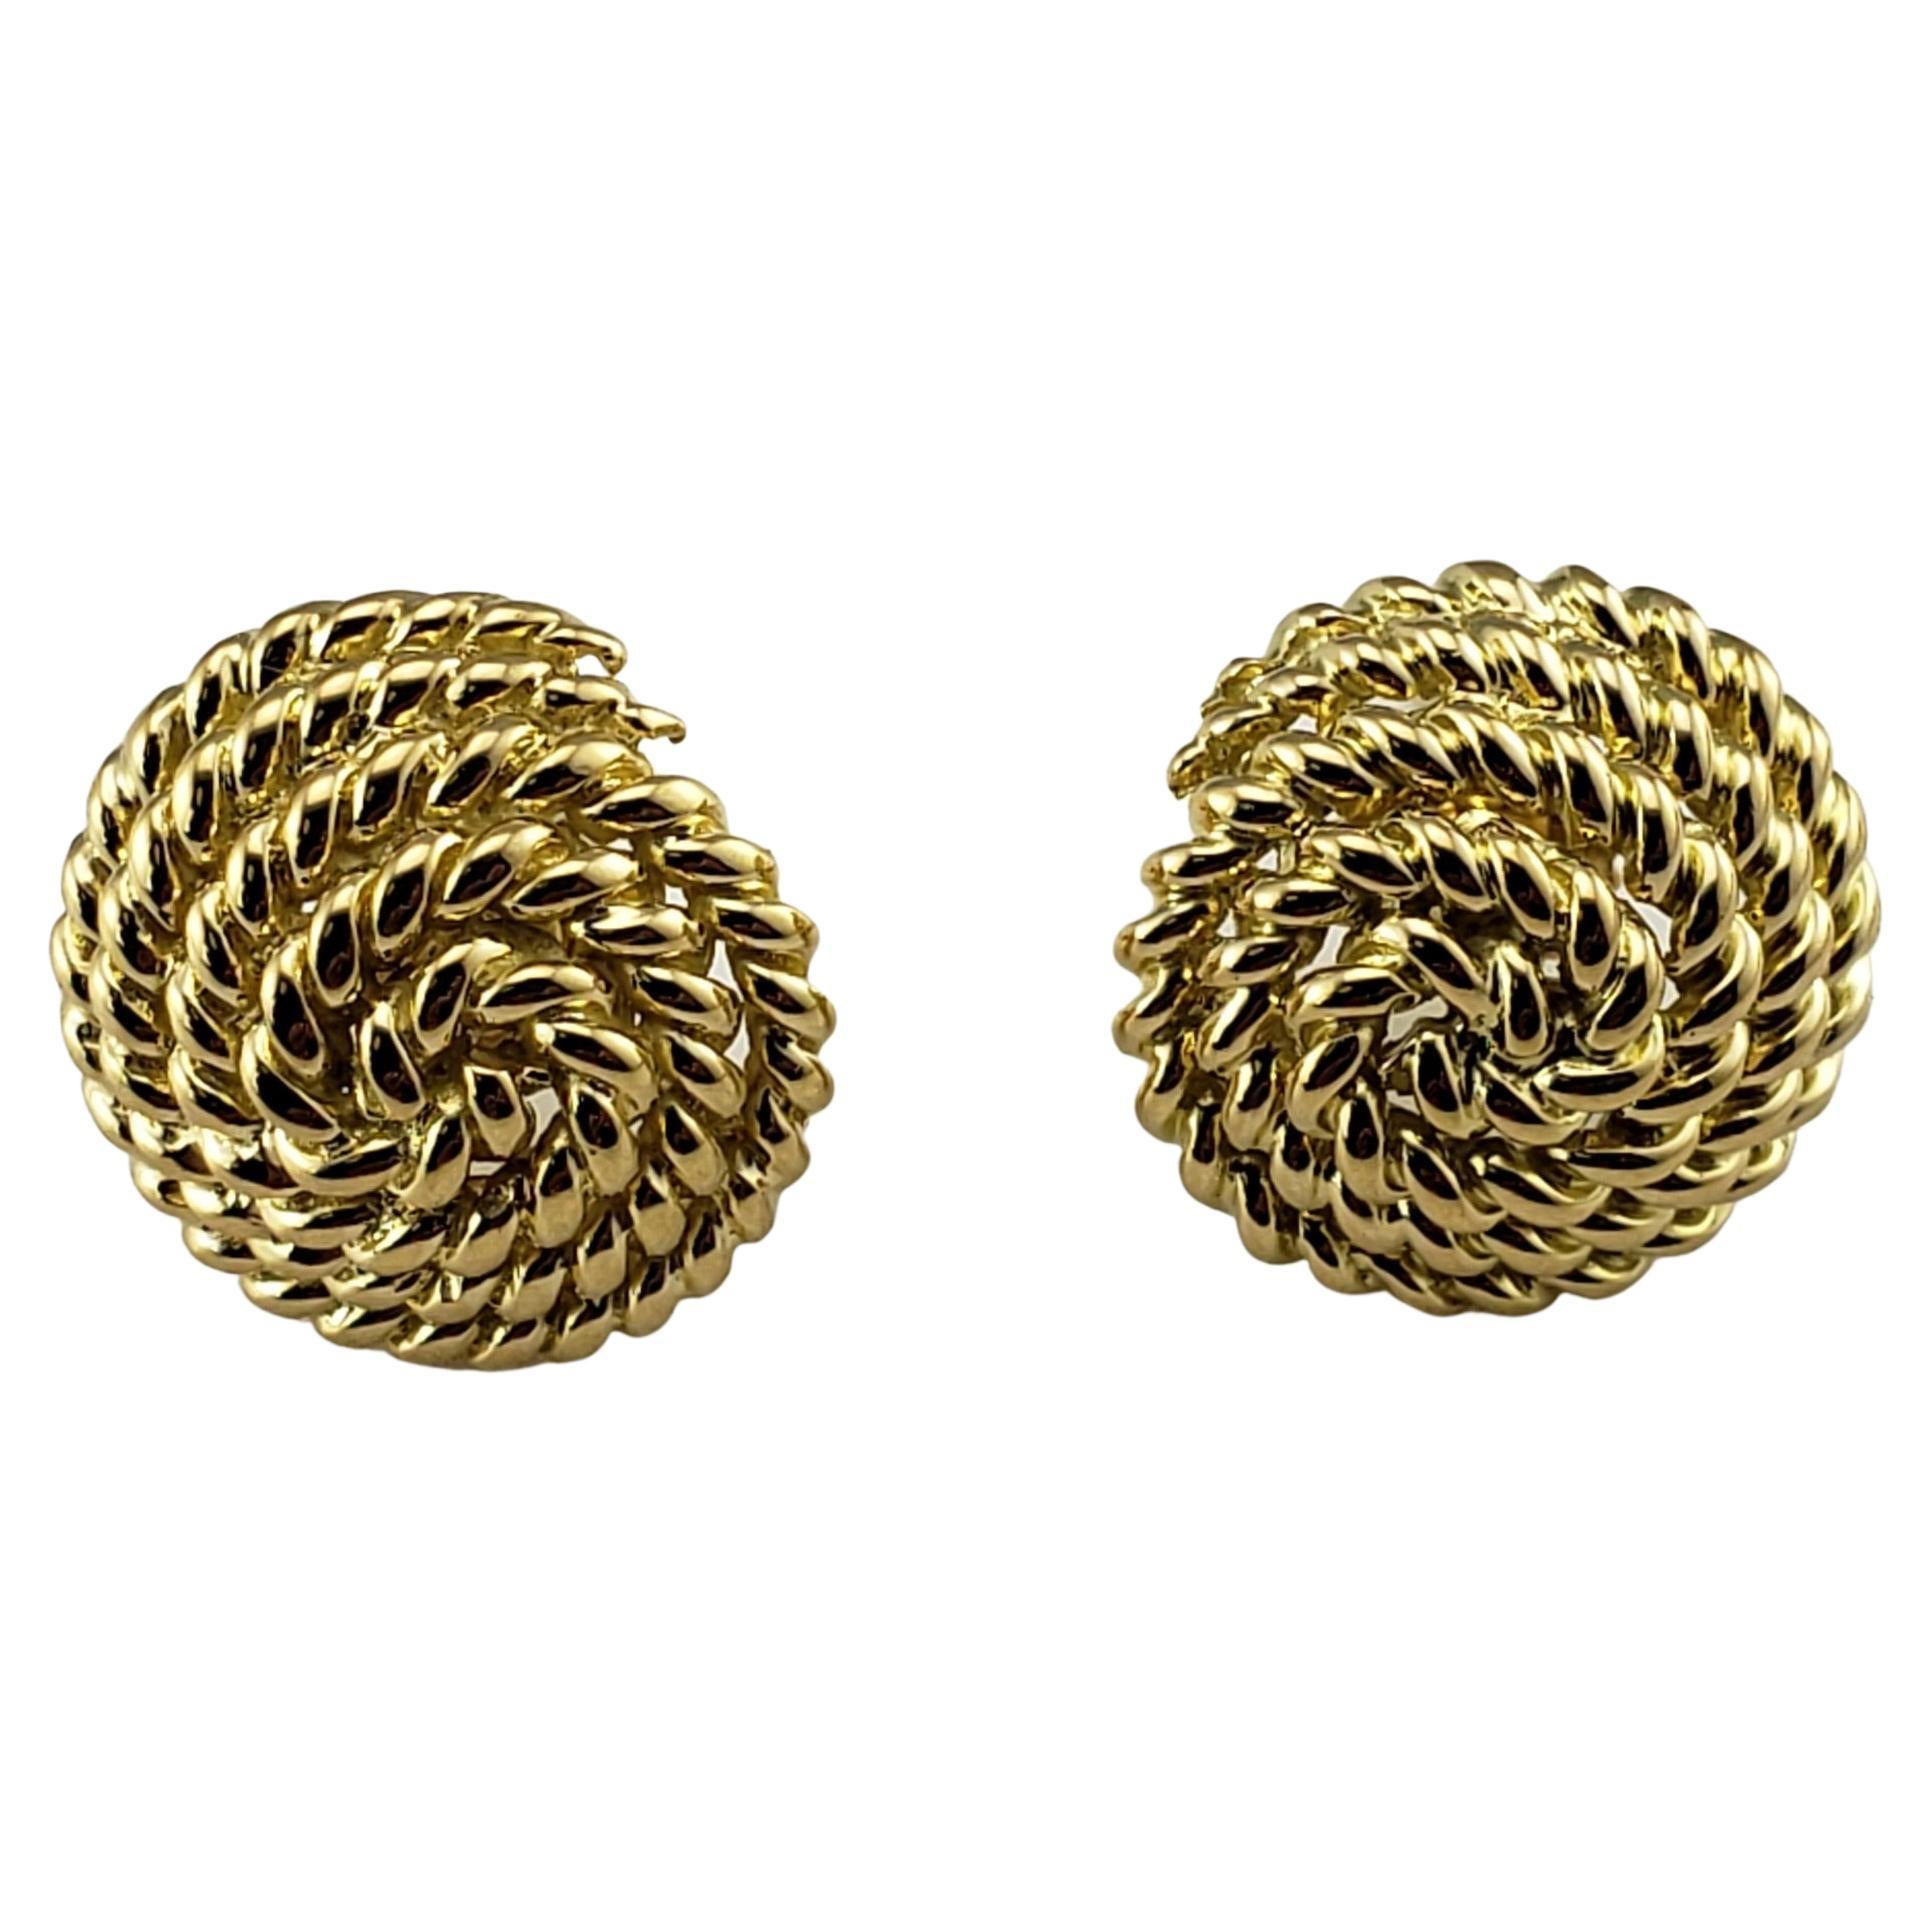 Tiffany & Co. Boucles d'oreilles vintage en or jaune 18 carats en forme de corde enroulée